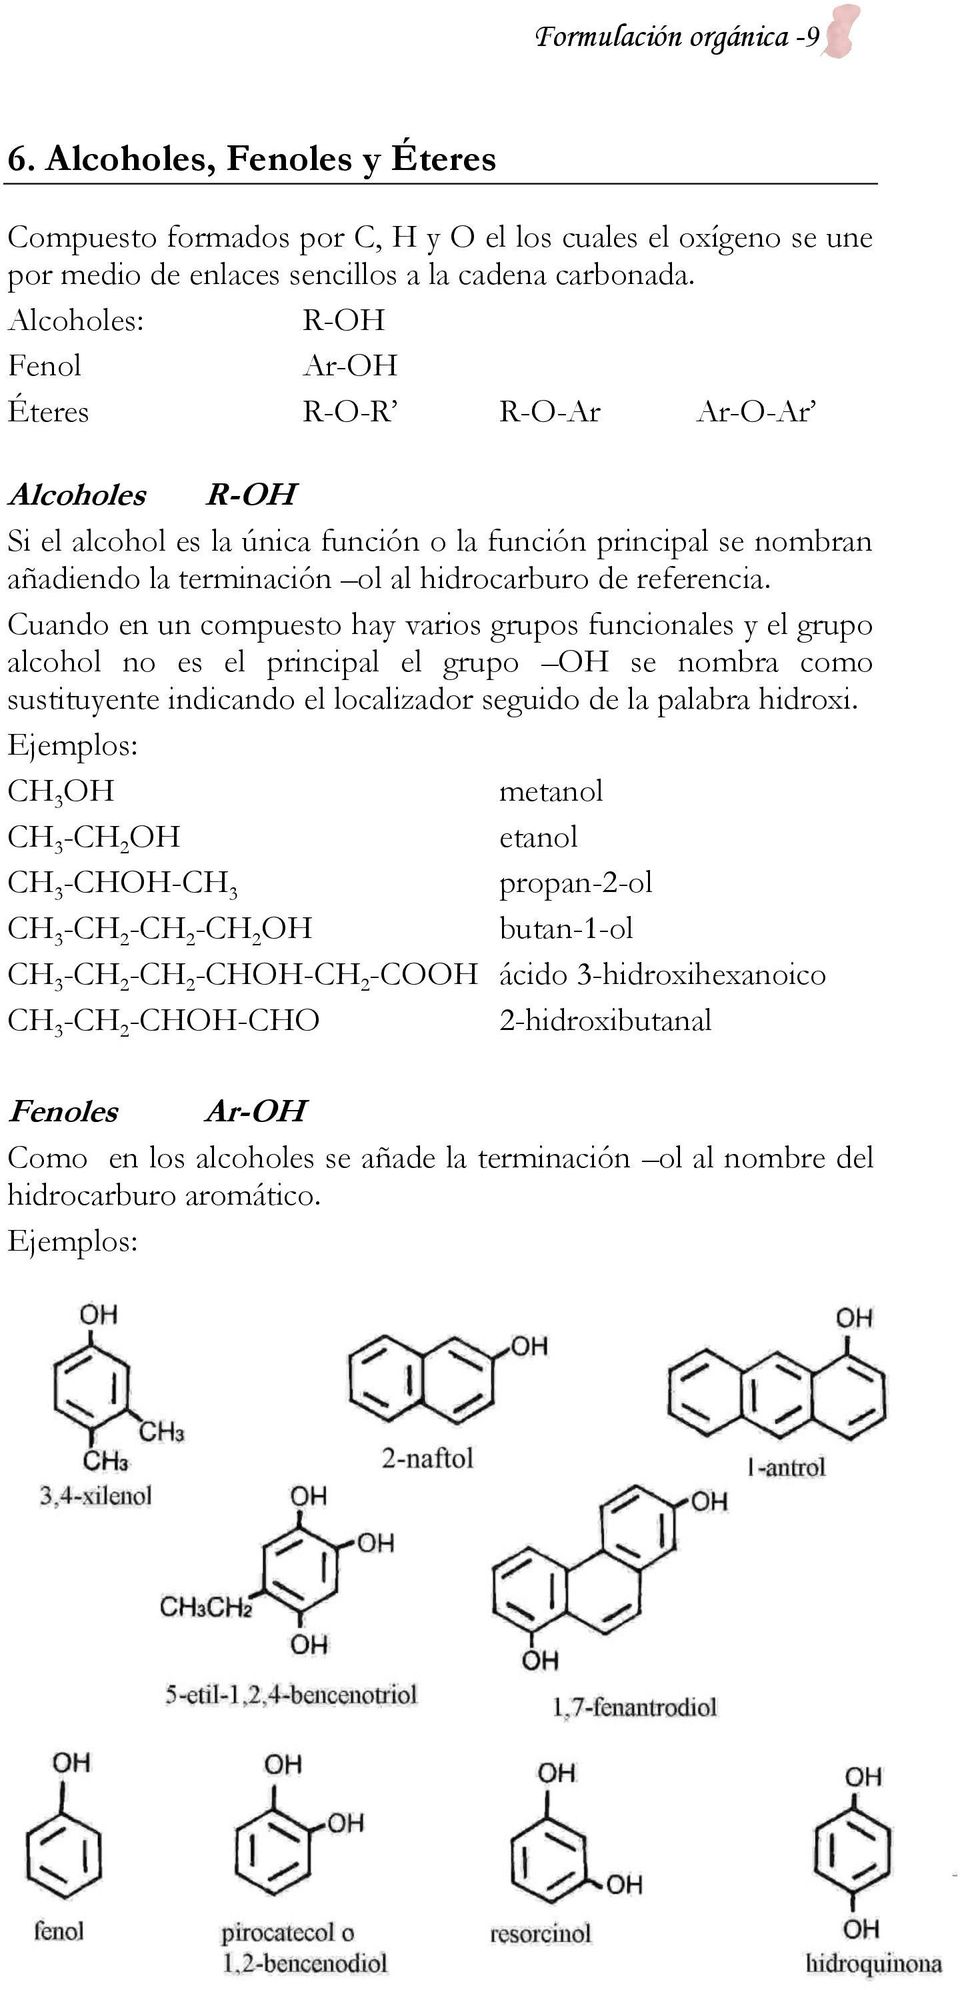 Cuando en un compuesto hay varios grupos funcionales y el grupo alcohol no es el principal el grupo OH se nombra como sustituyente indicando el localizador seguido de la palabra hidroxi.